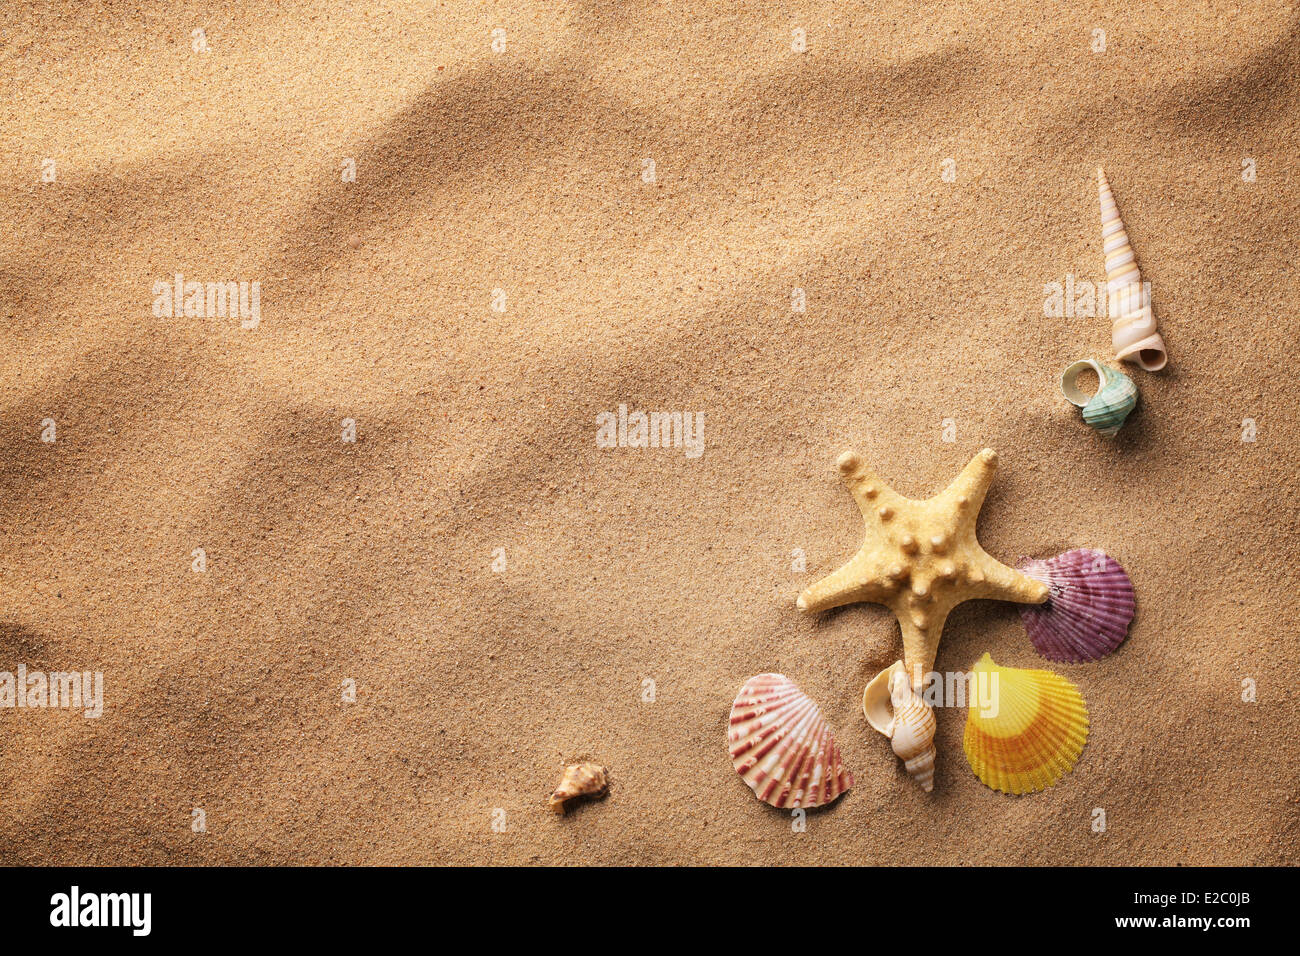 seashells on sand beach Stock Photo